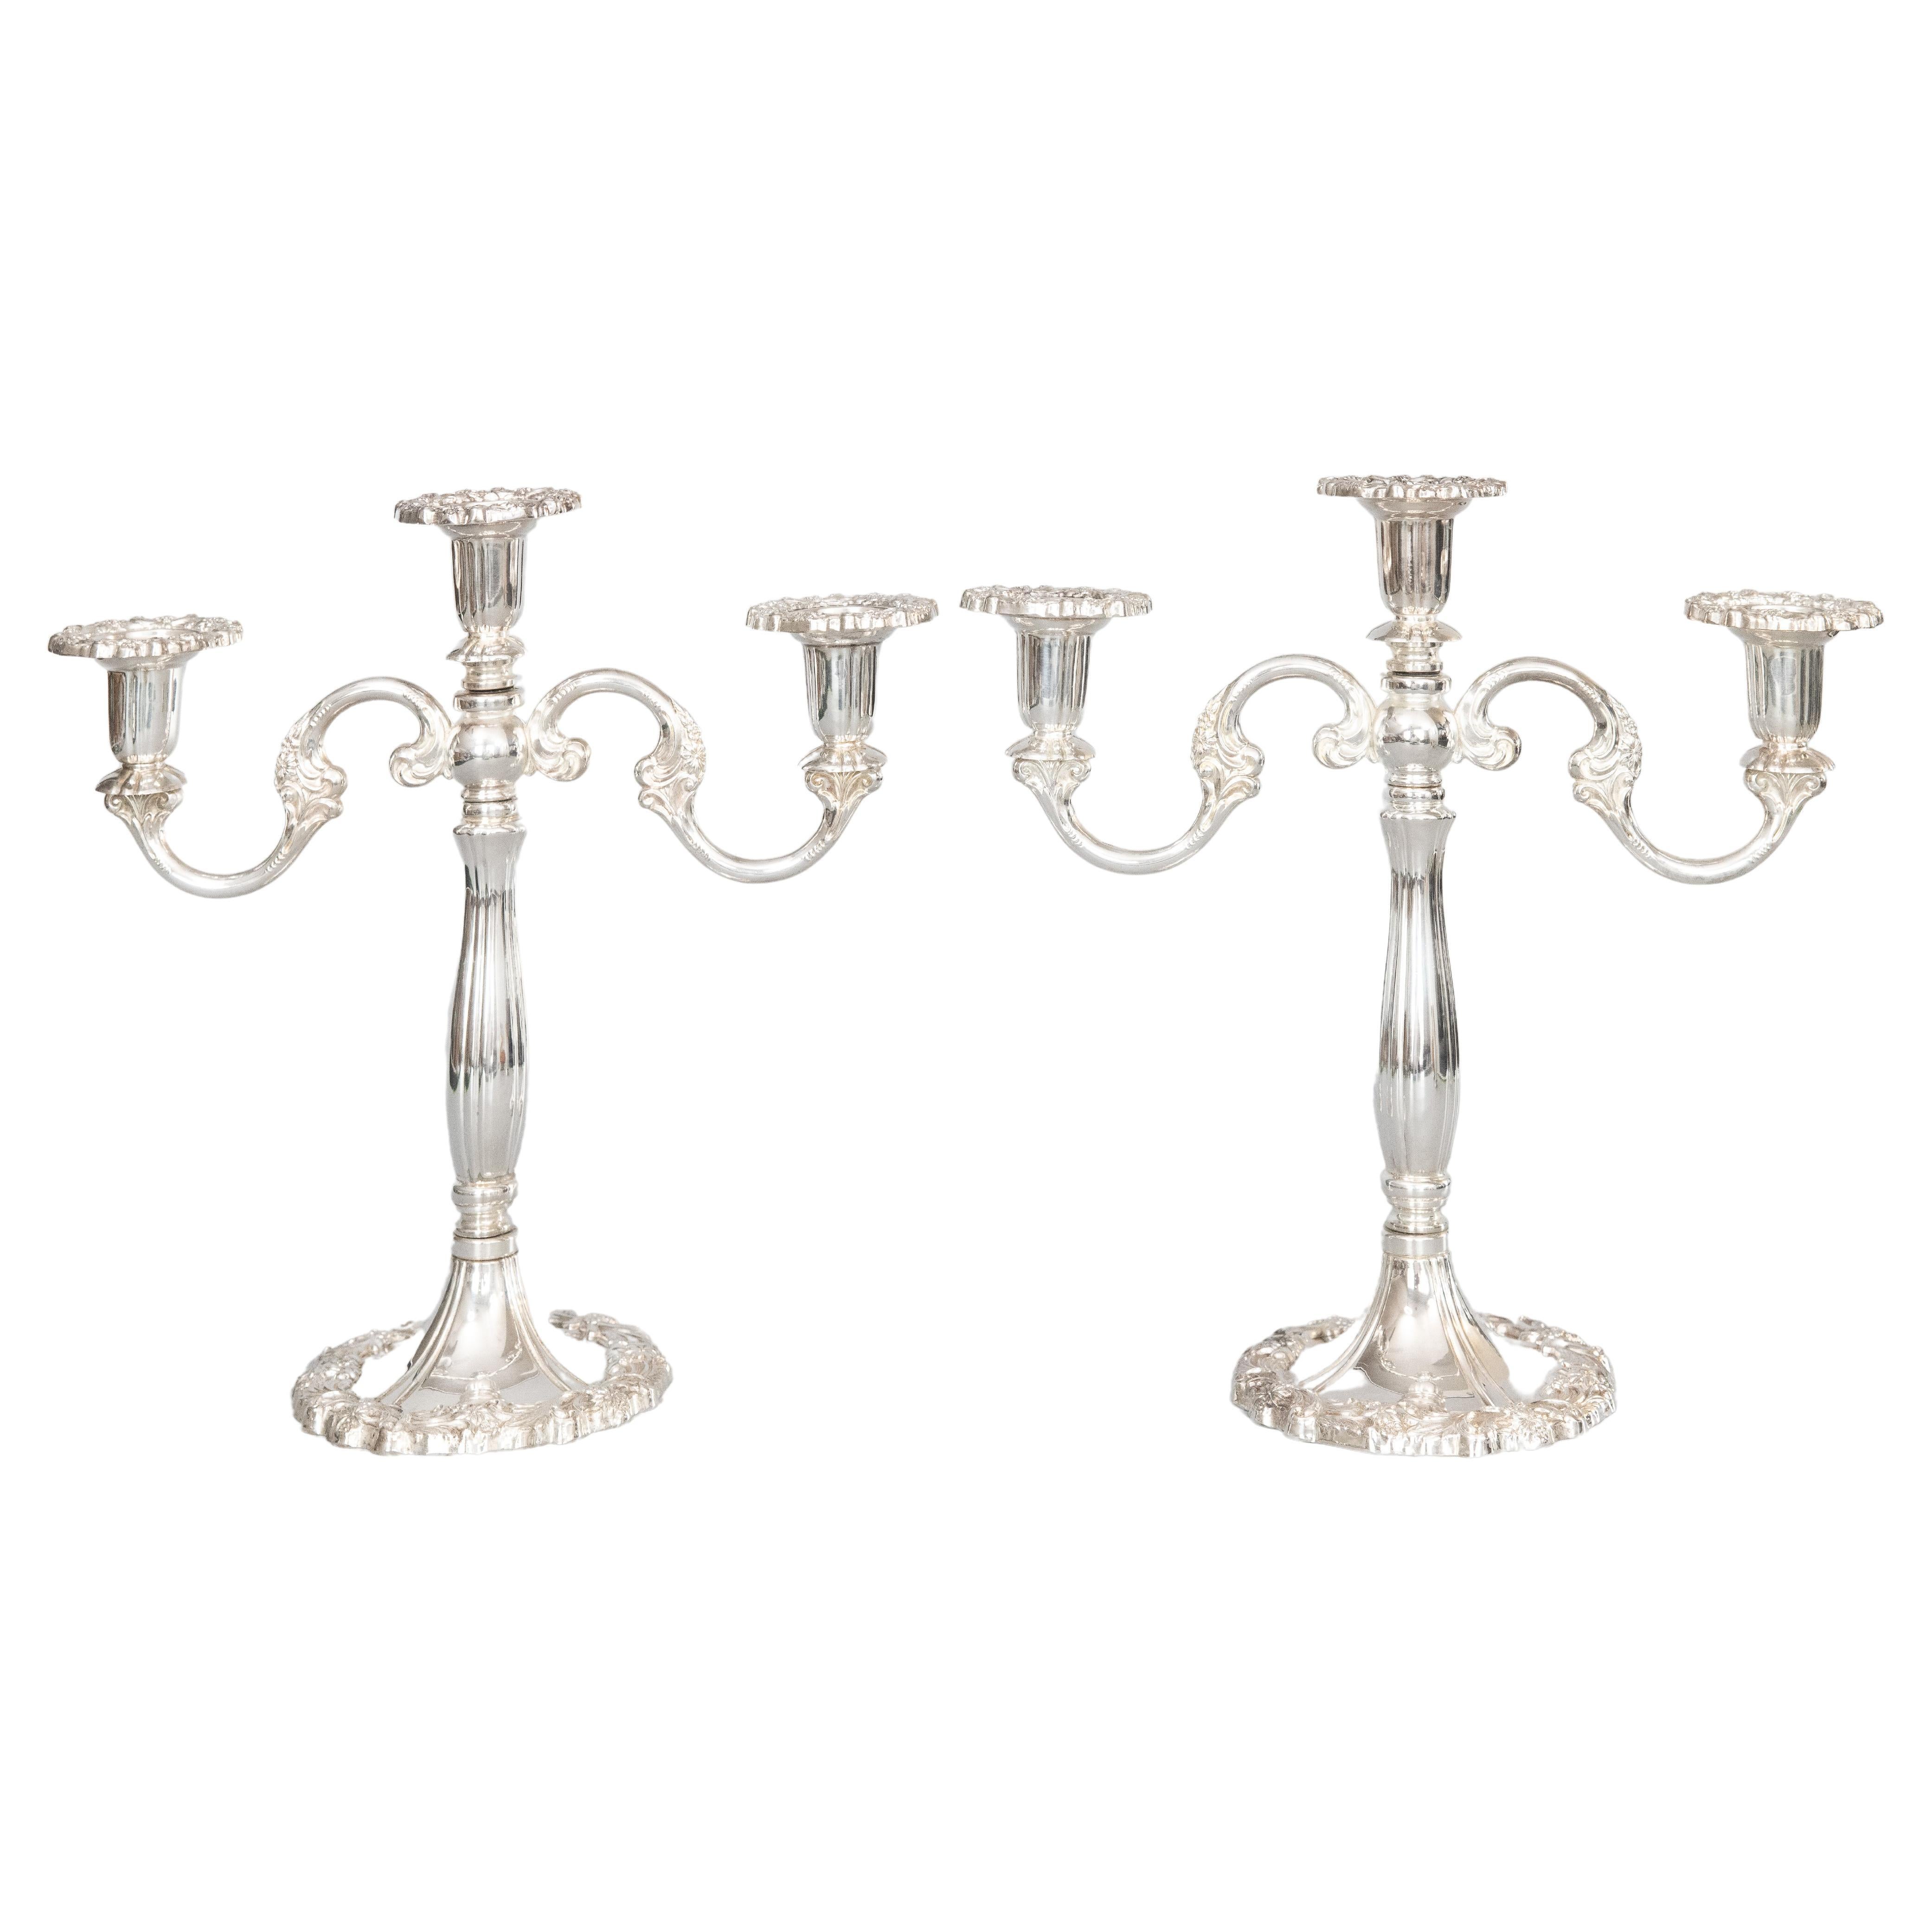 Paire de chandeliers italiens en métal argenté du milieu du 20e siècle